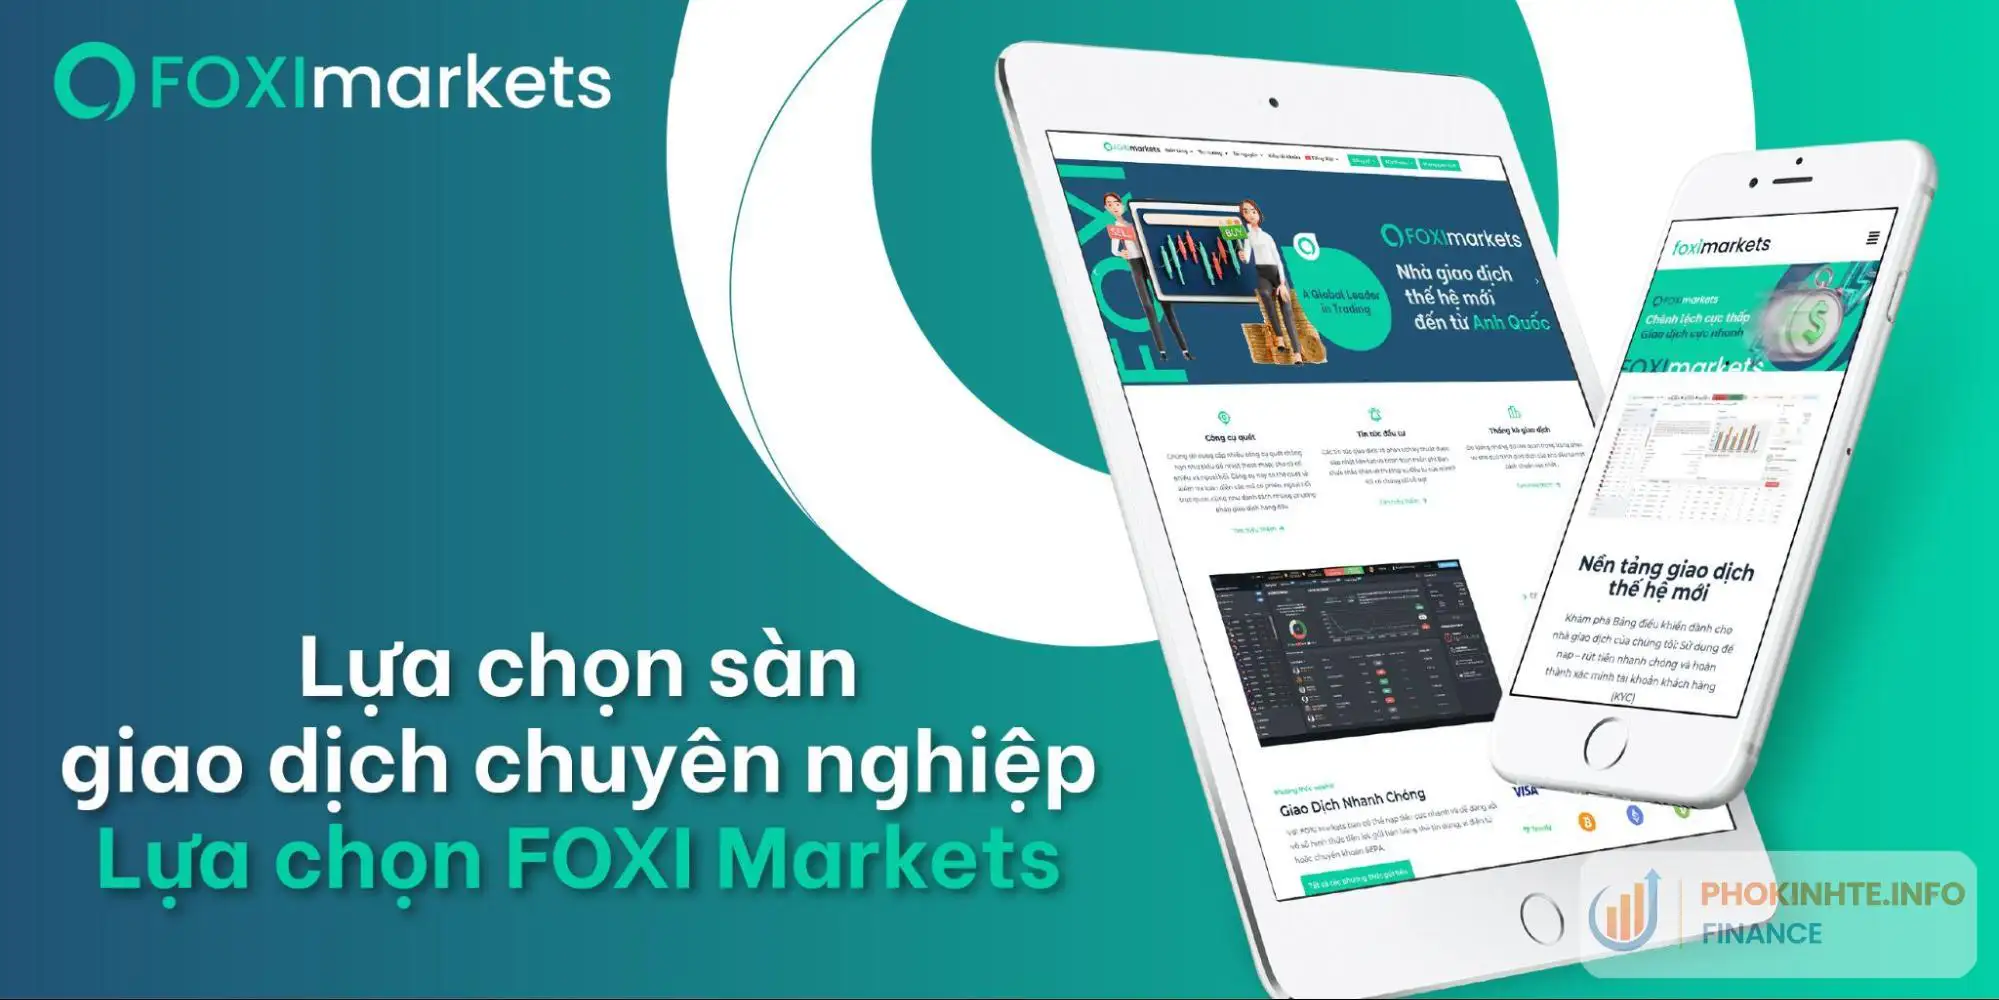 Lựa chọn FOXI Markets - Sàn giao dịch chuyên nghiệp giúp khắc phục rủi ro trong đầu tư chứng khoán